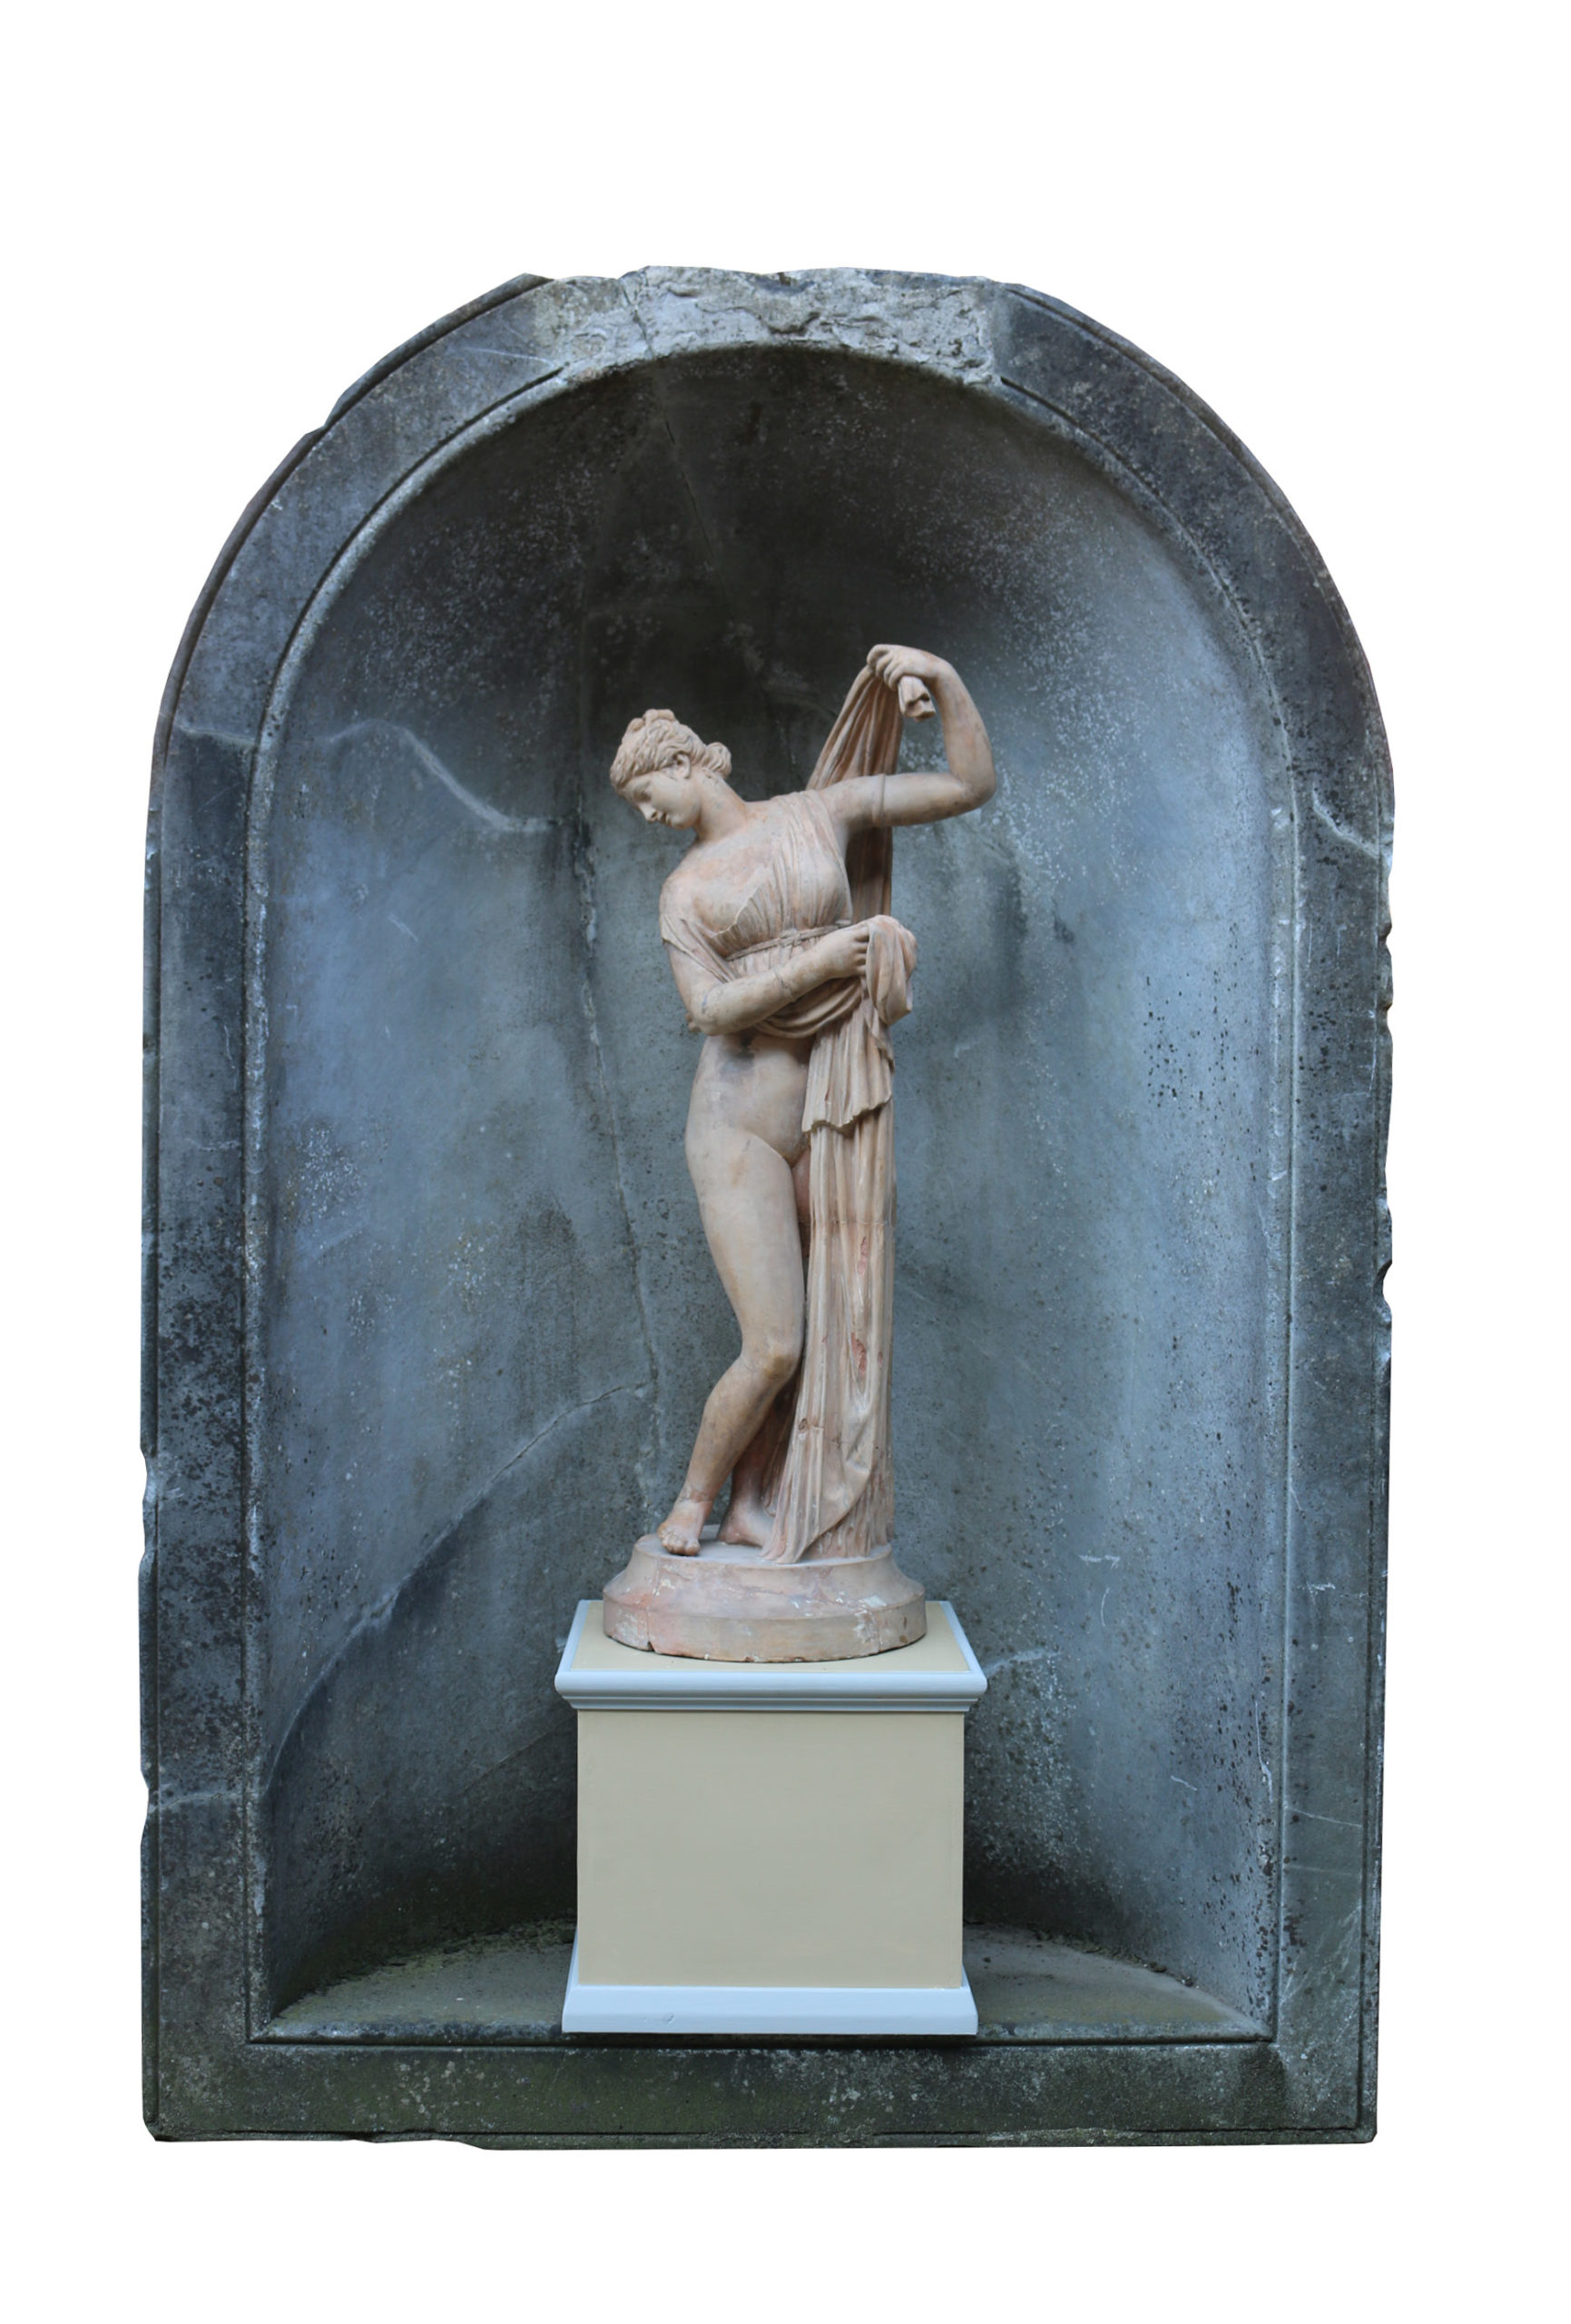 The Callipygian Venus (left) and Aphrodite squatting pictured at